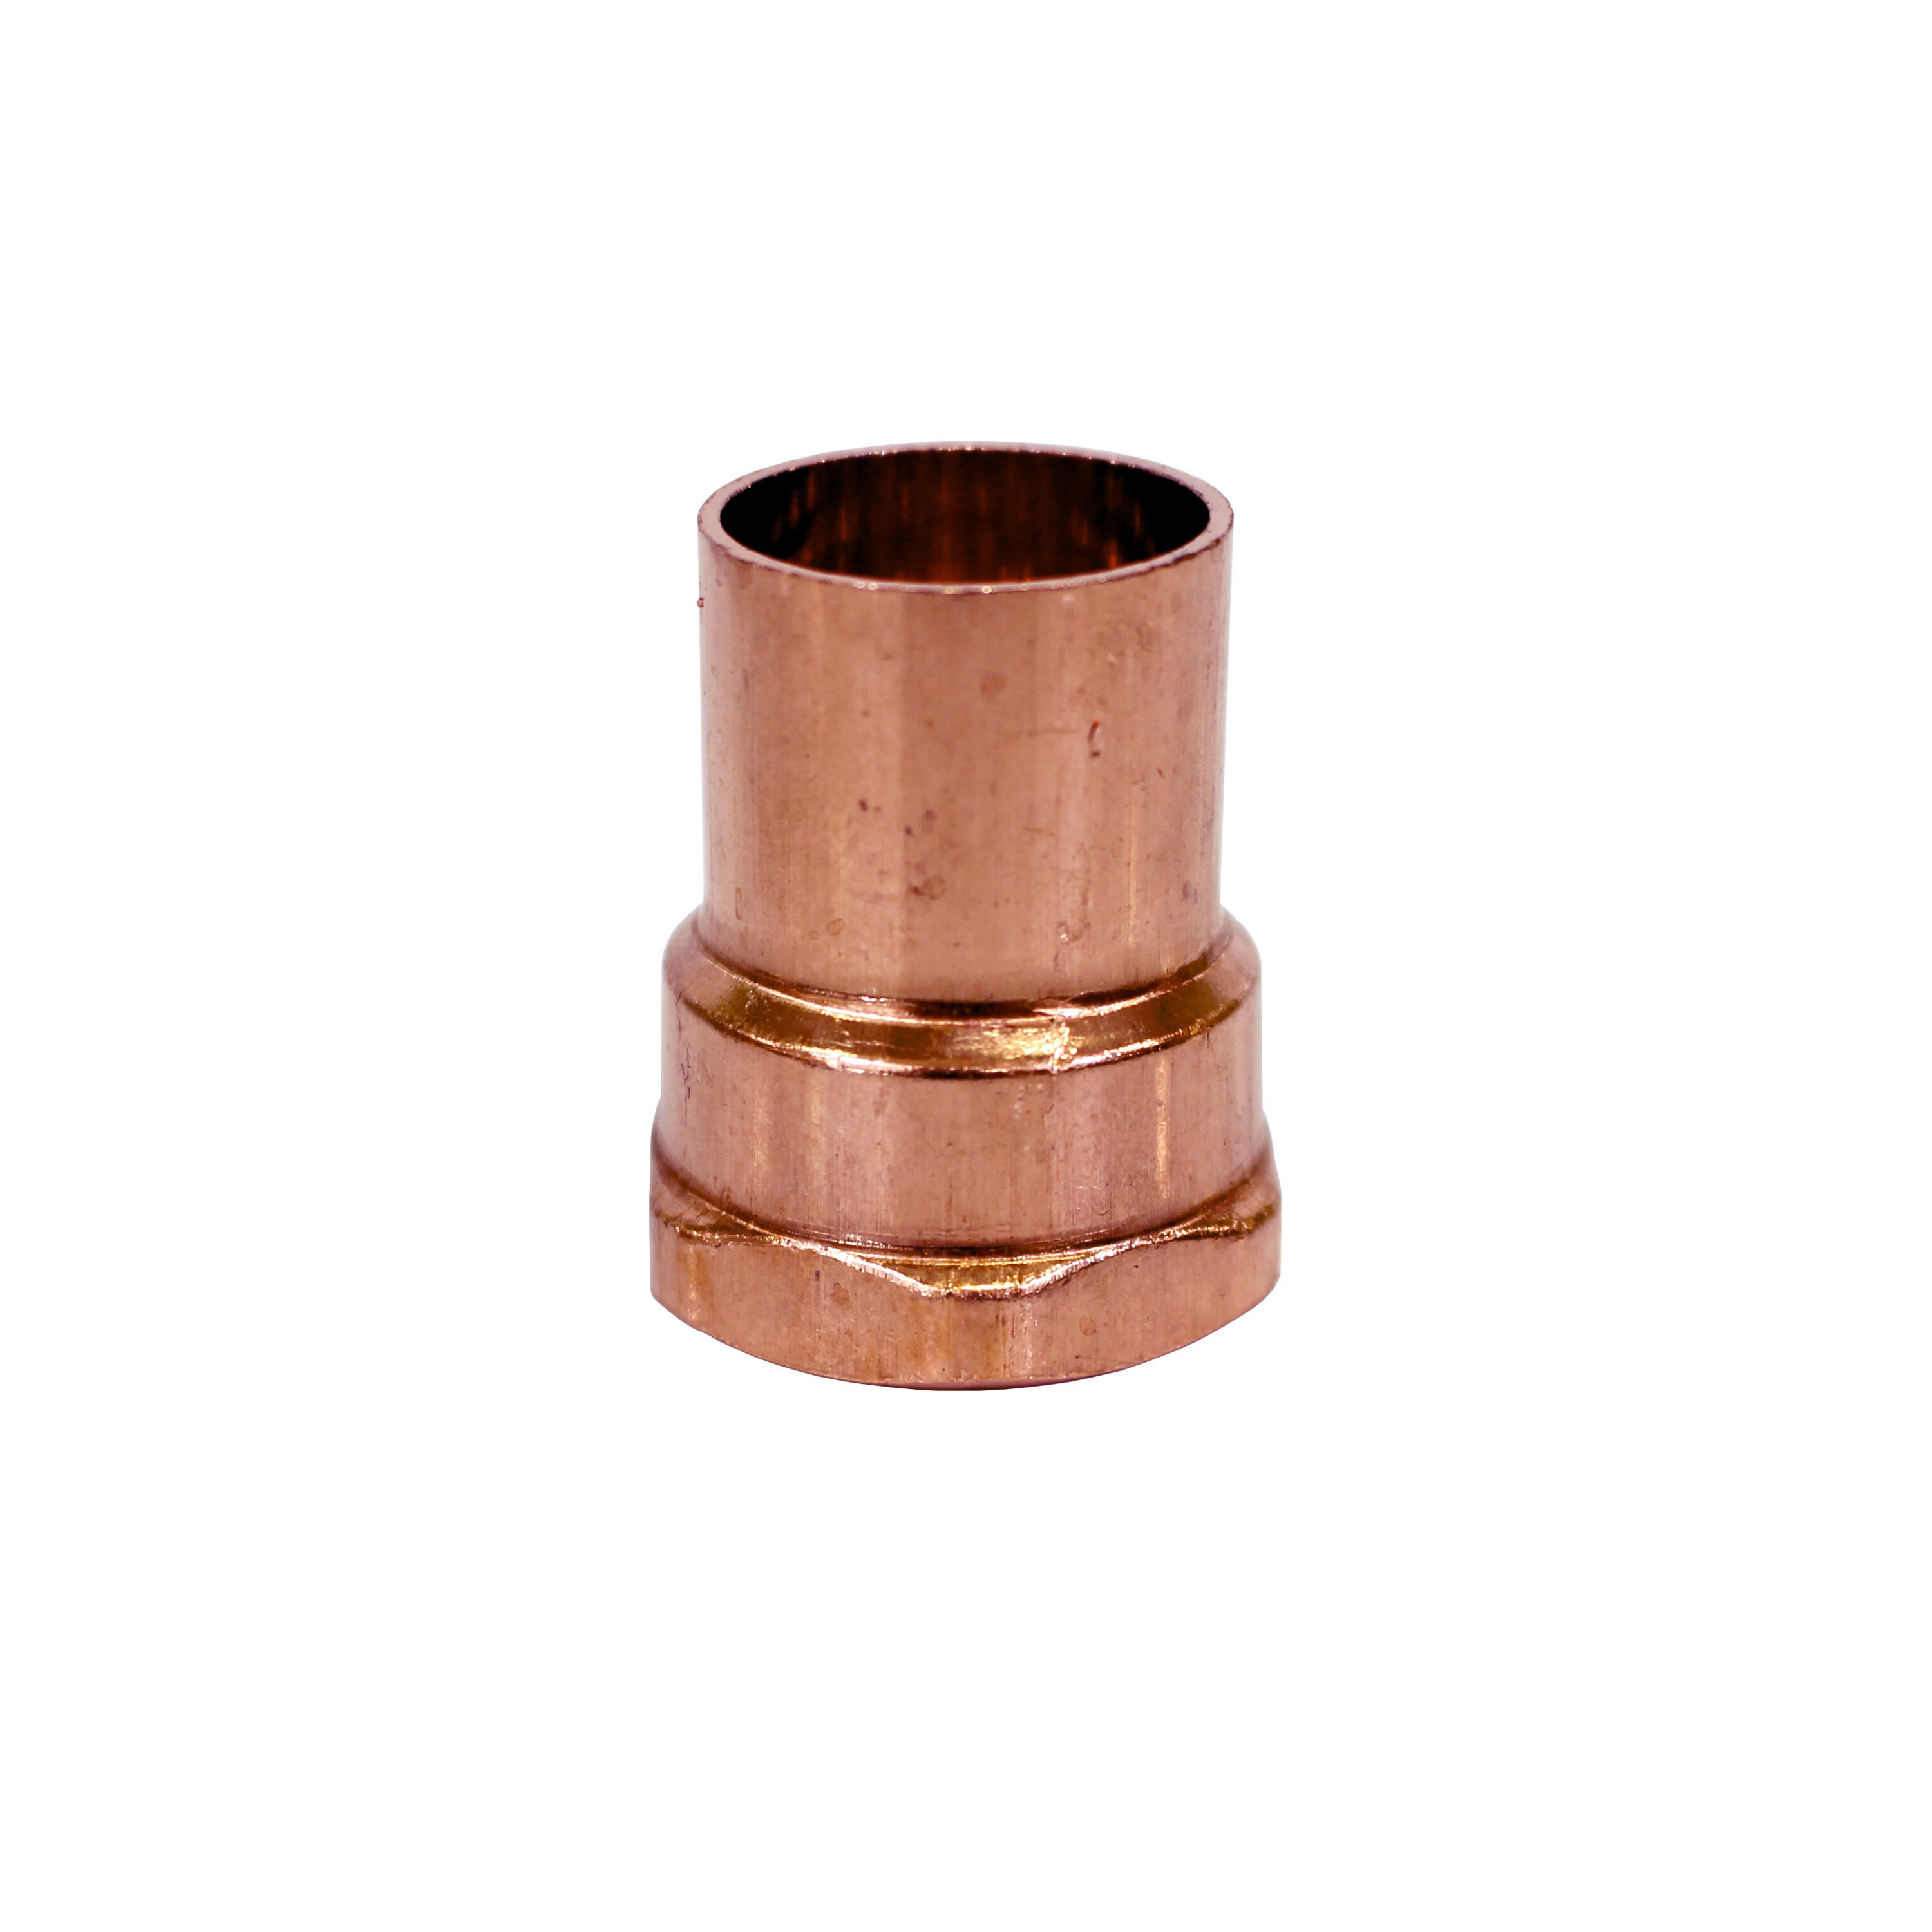 50 Copper Sheet 18 mm x 90 ° II 5002a Copper Pipe Solder Fitting Copper Bend CU Fitting